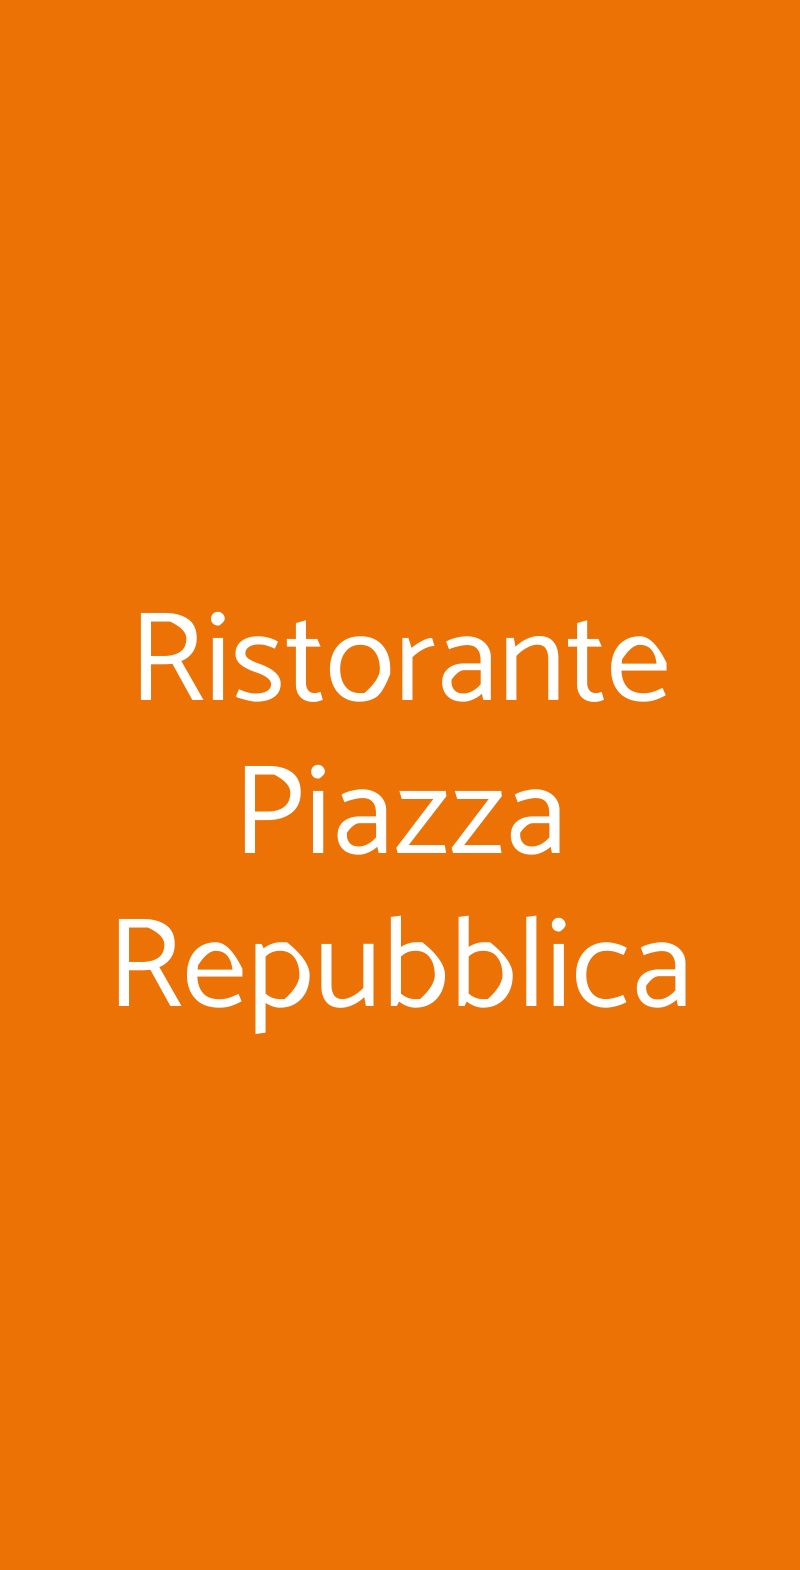 Ristorante Piazza Repubblica Milano menù 1 pagina